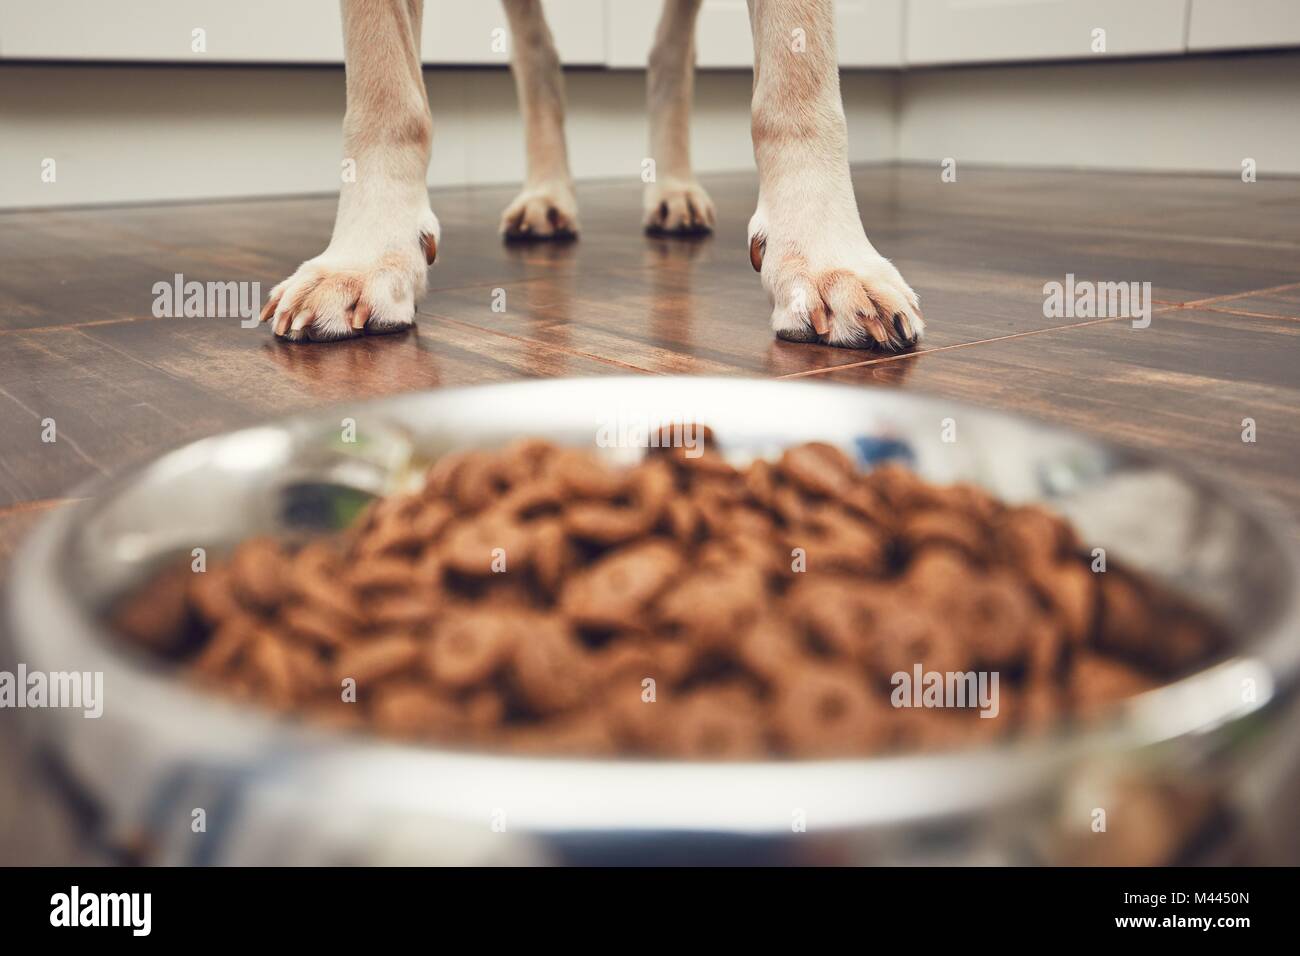 Das häusliche Leben mit Haustier. Fütterung hungrig Labrador Retriever. Pfoten vor der Schüssel mit Granulat. Stockfoto